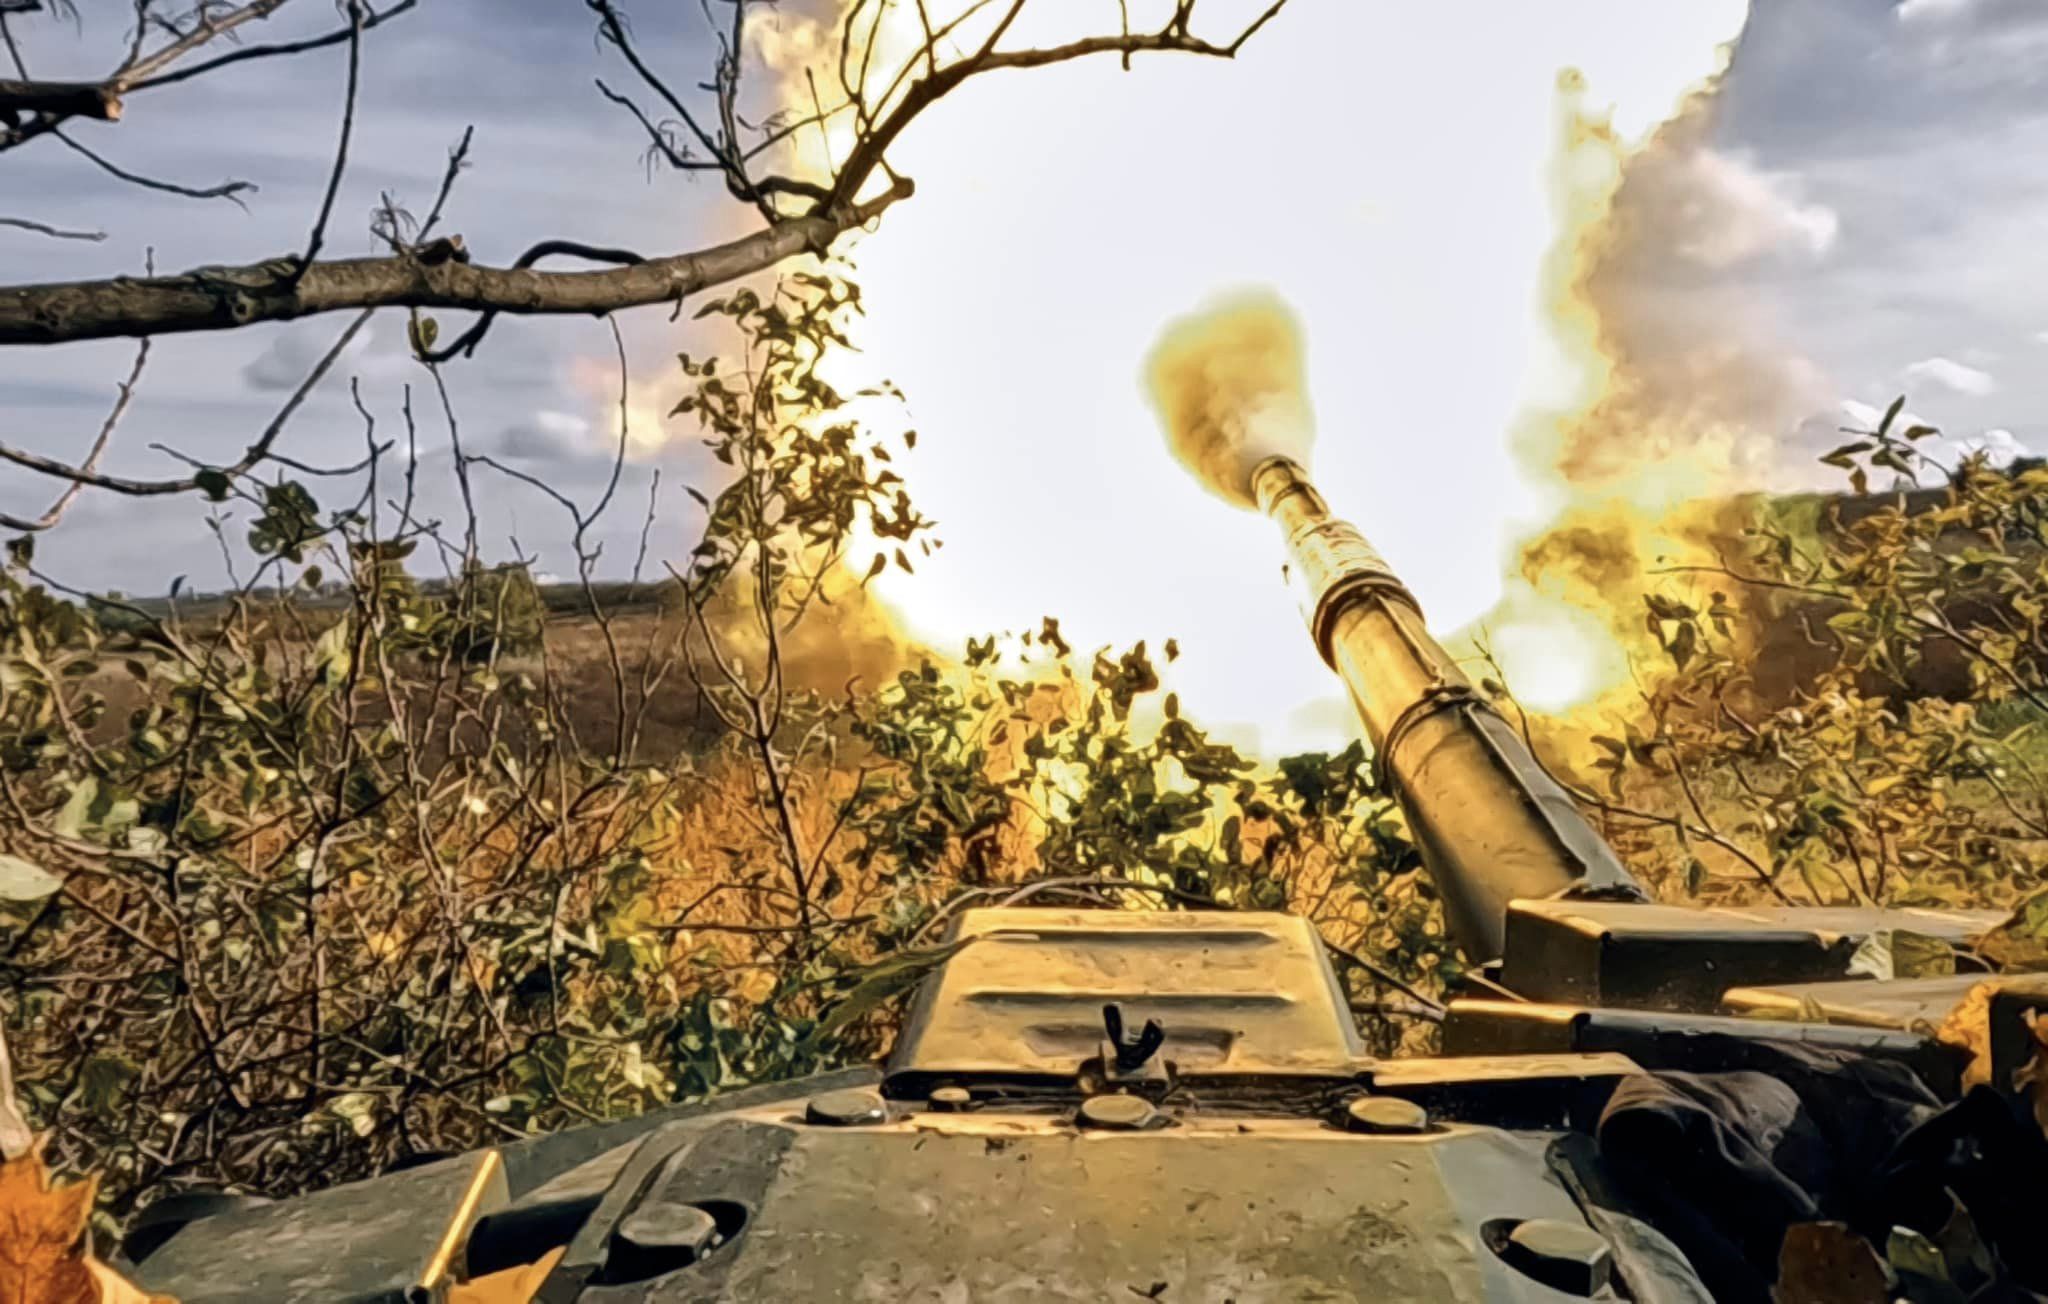 Сили оборони провели «серію успішних дій» на лівому березі Дніпра на Херсонському напрямку.